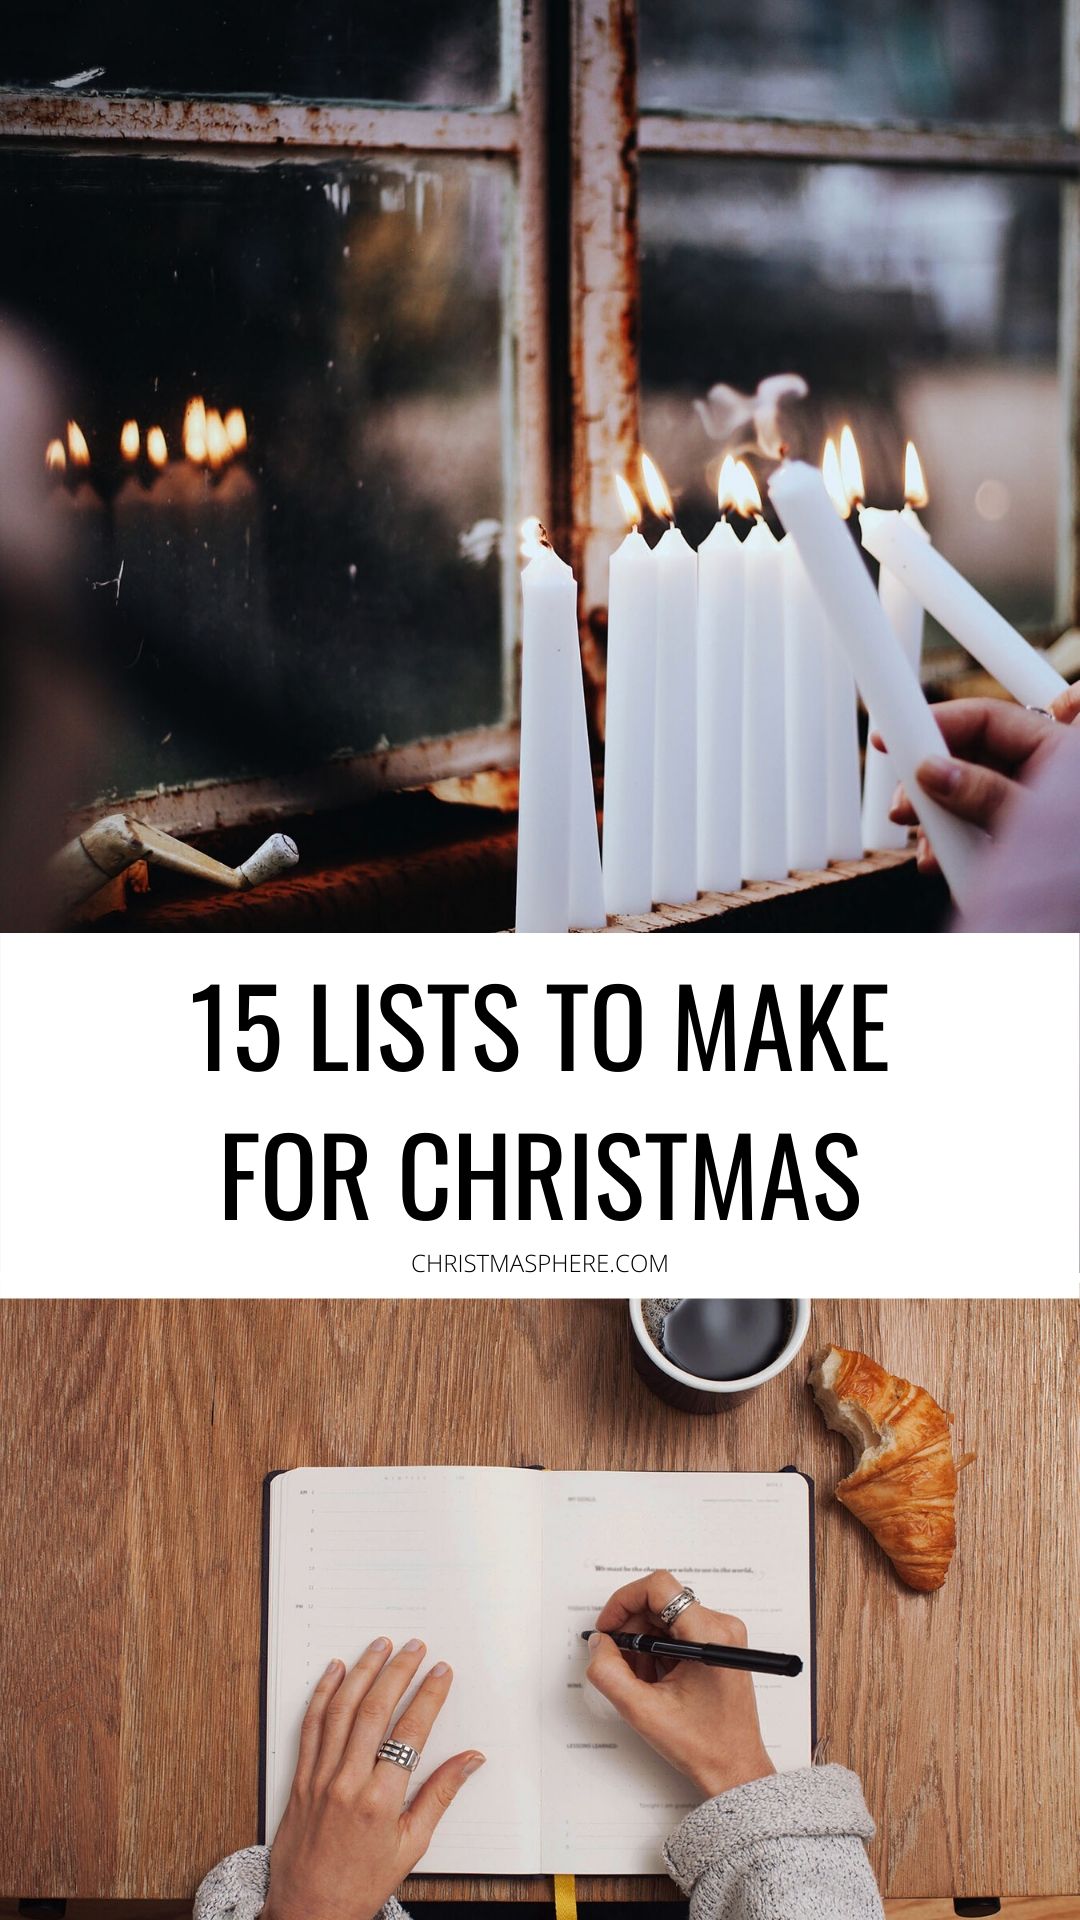 15 LISTS TO MAKE FOR CHRISTMAS